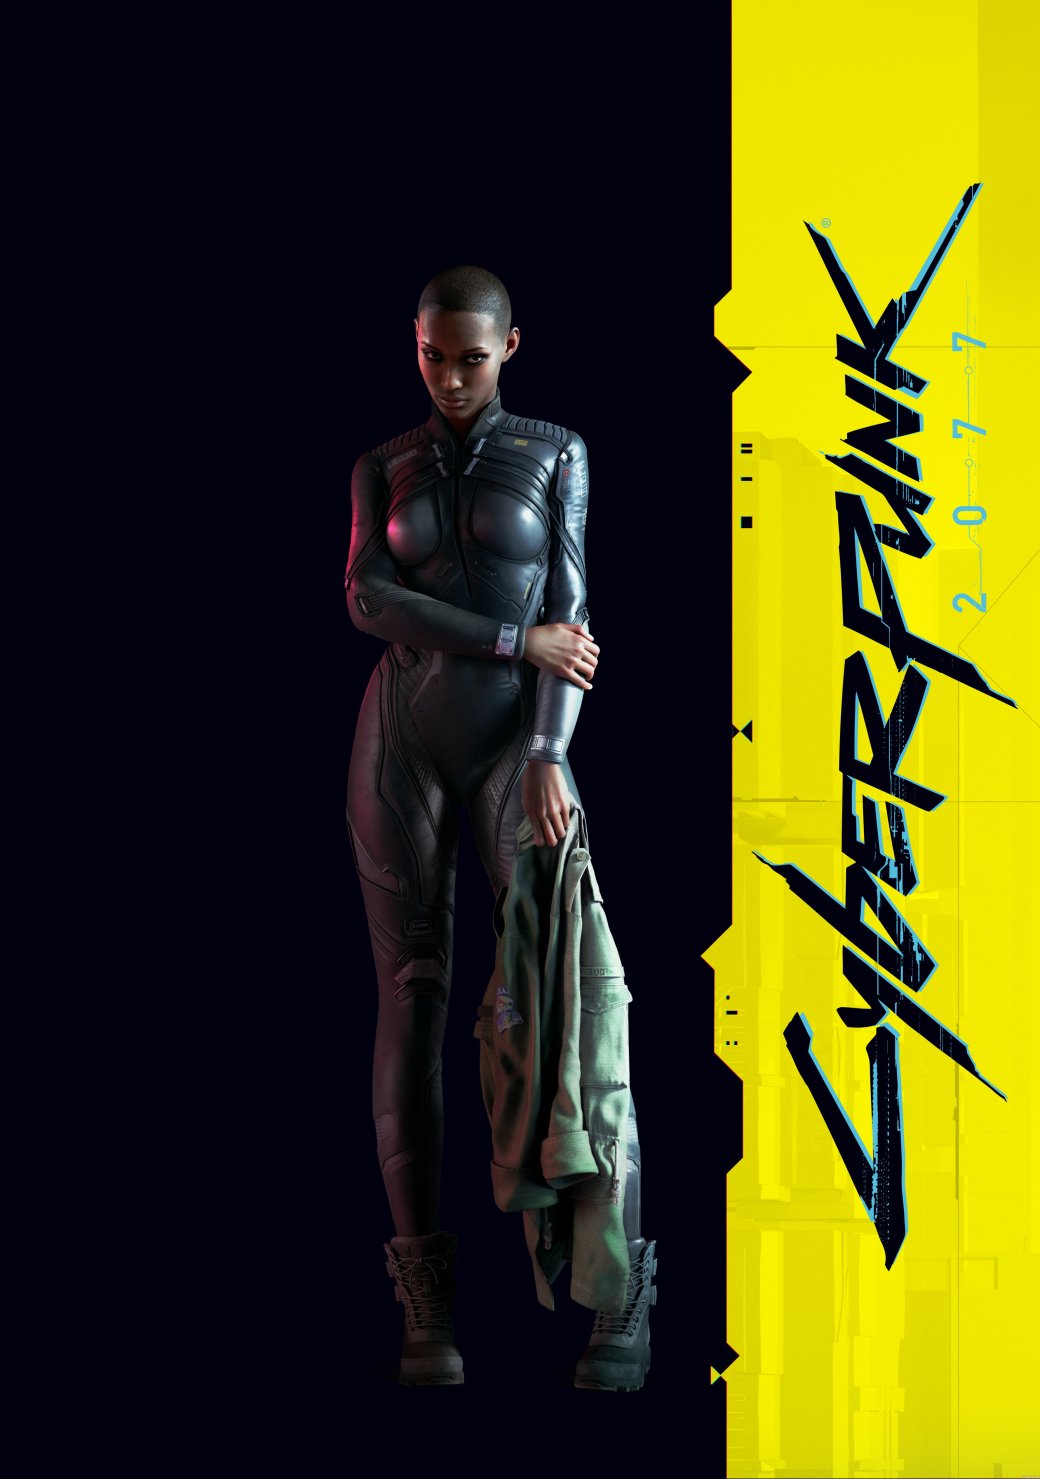 Галерея Яркое будущее высоких технологий на новых постерах и рендерах персонажей Cyberpunk 2077 - 5 фото